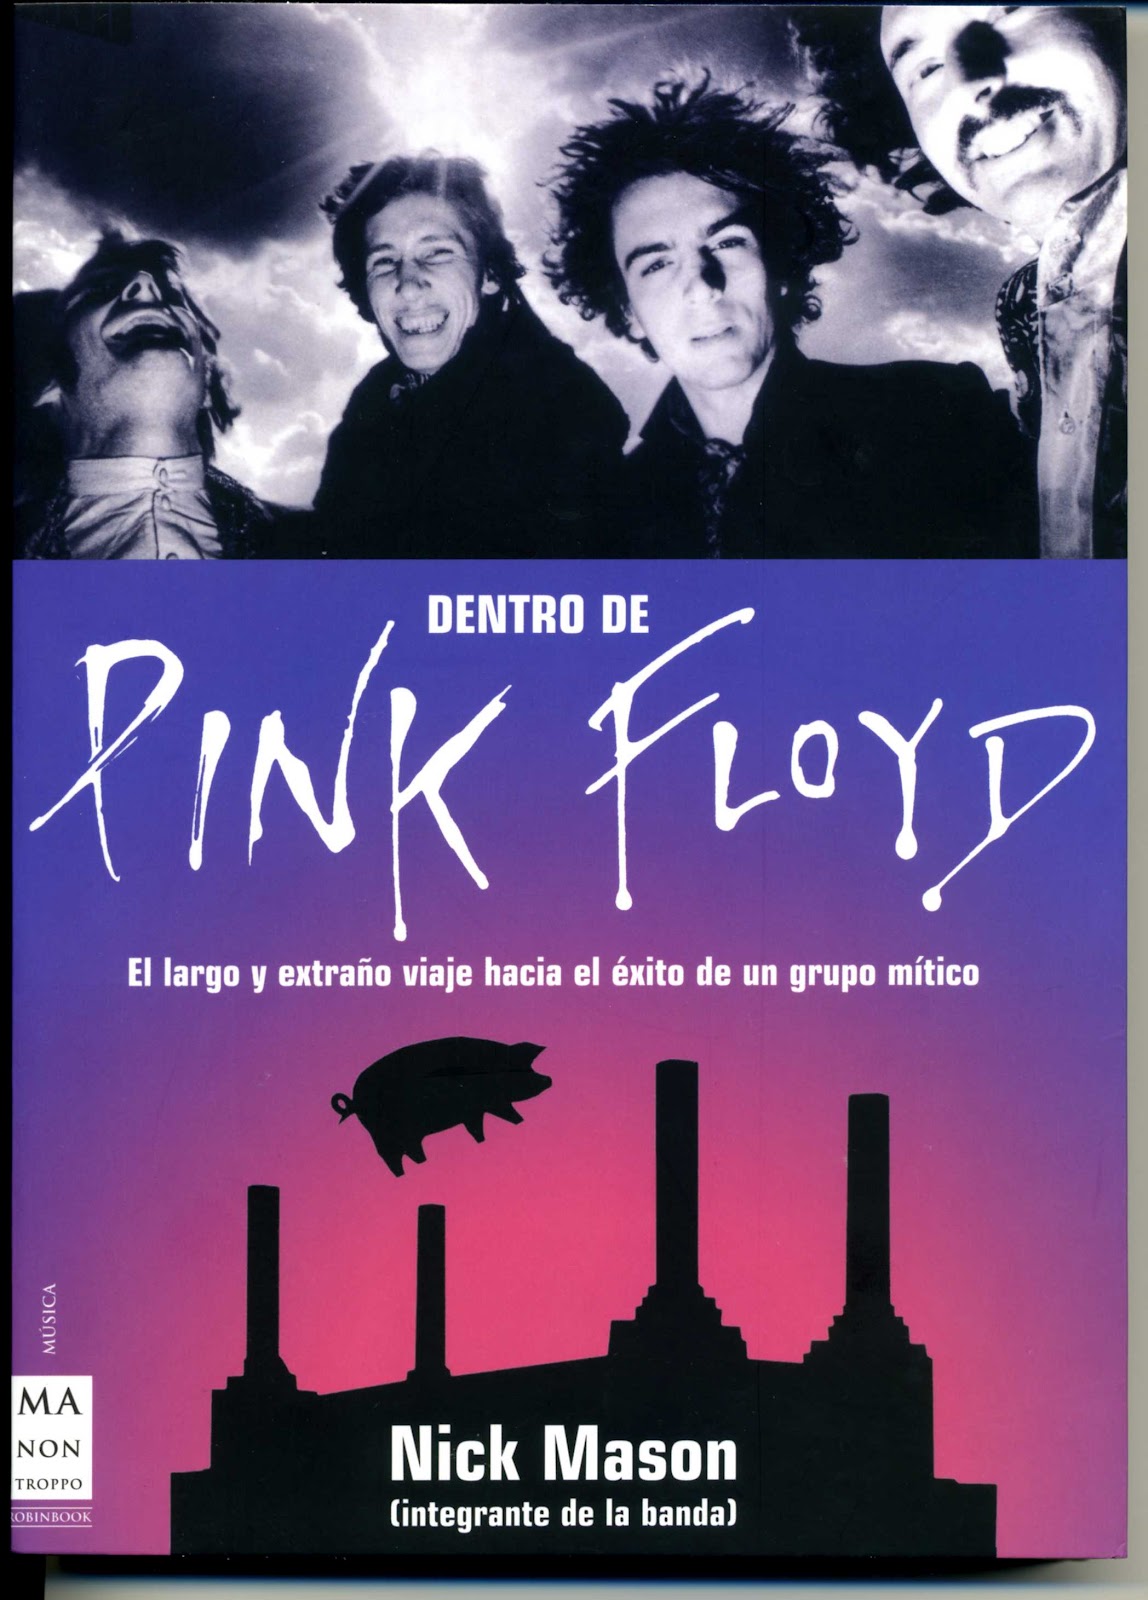 Pink Floyd. La sempiterna y punzante pregunta. - Página 20 PINK+BOOK001